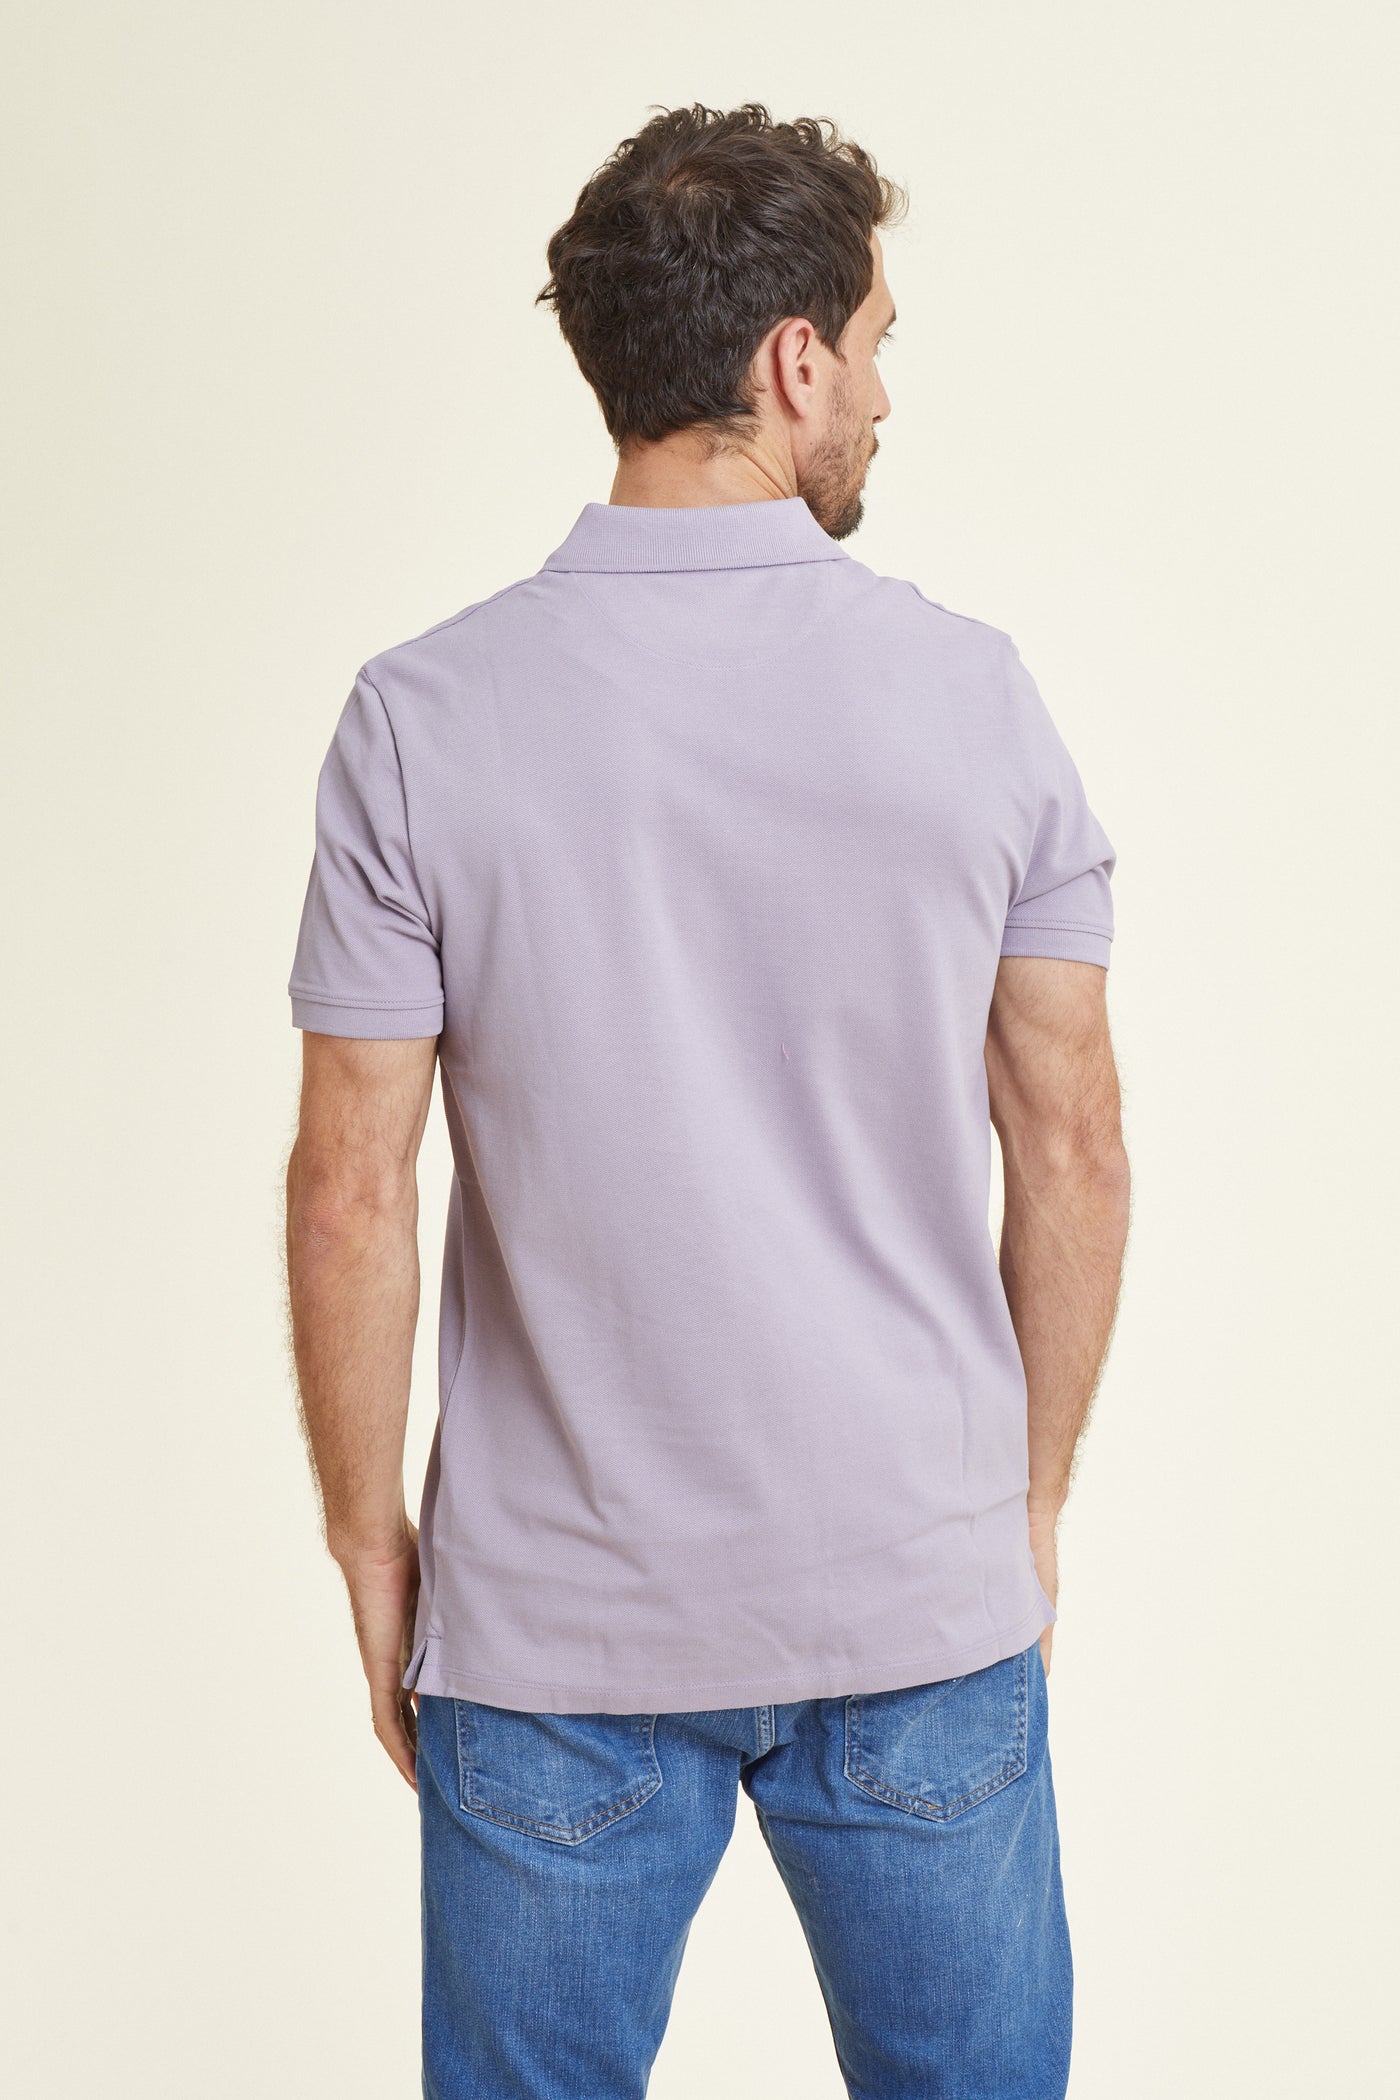 חולצת פולו REGULAR FIT שרוול קצר בצבע סגול